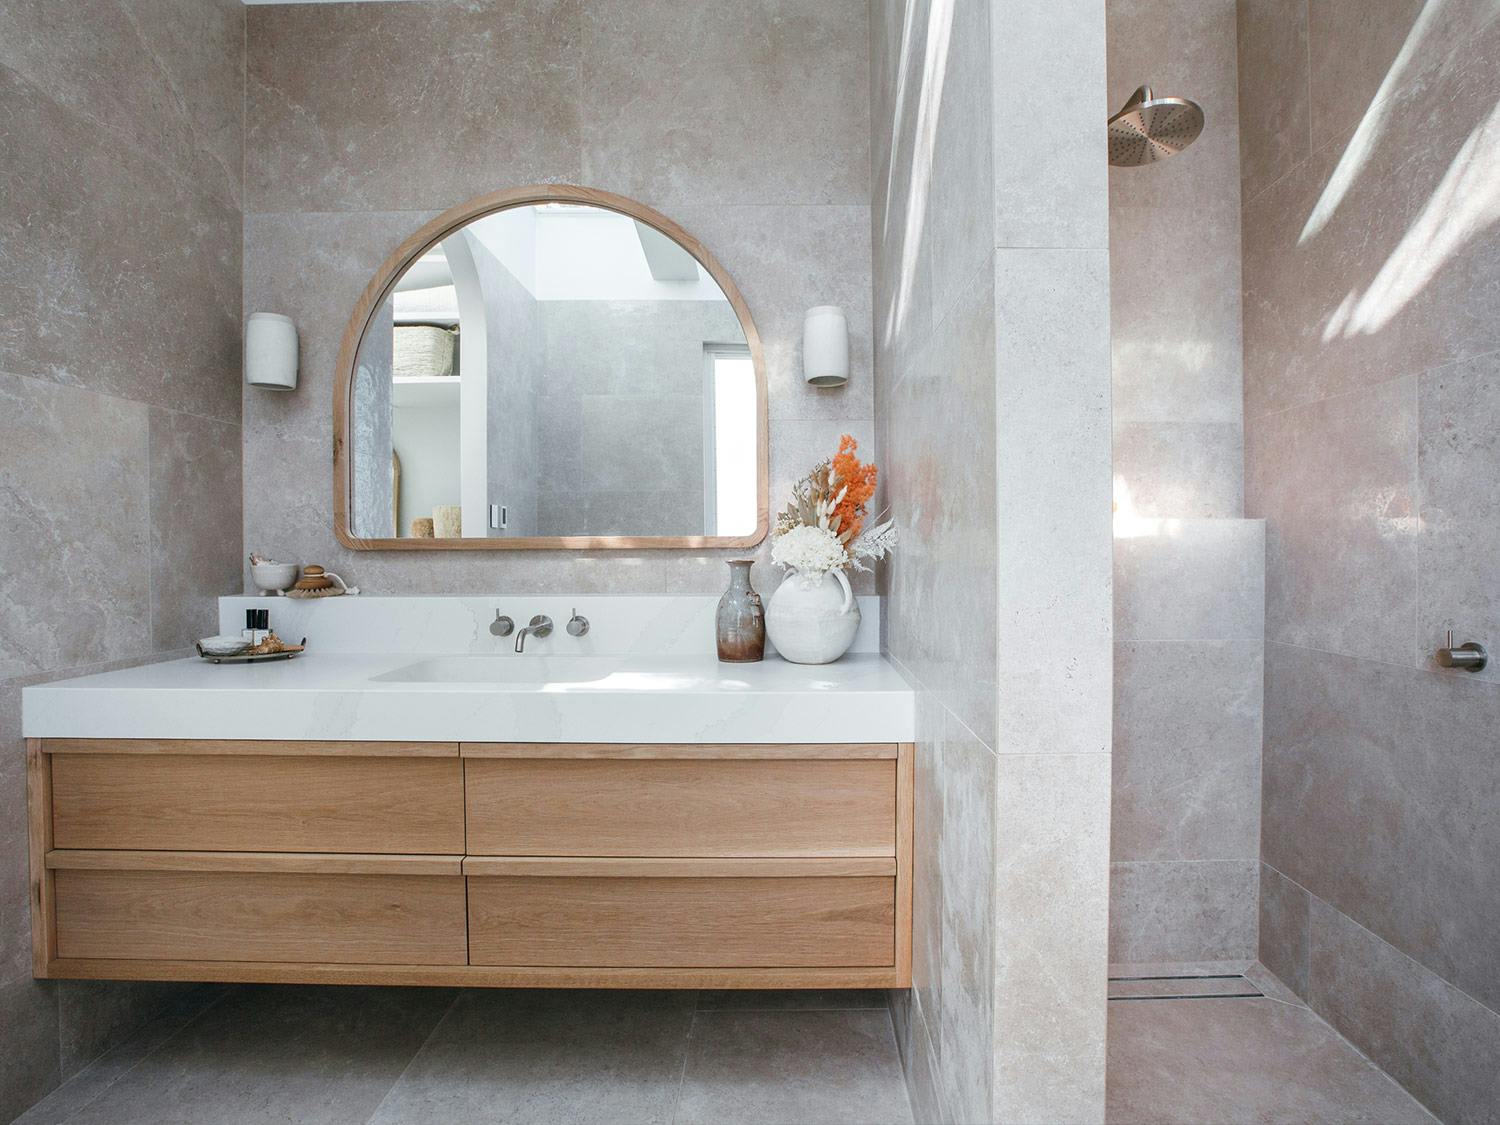 Bathroom design tips from renovation duo, Kyal and Kara